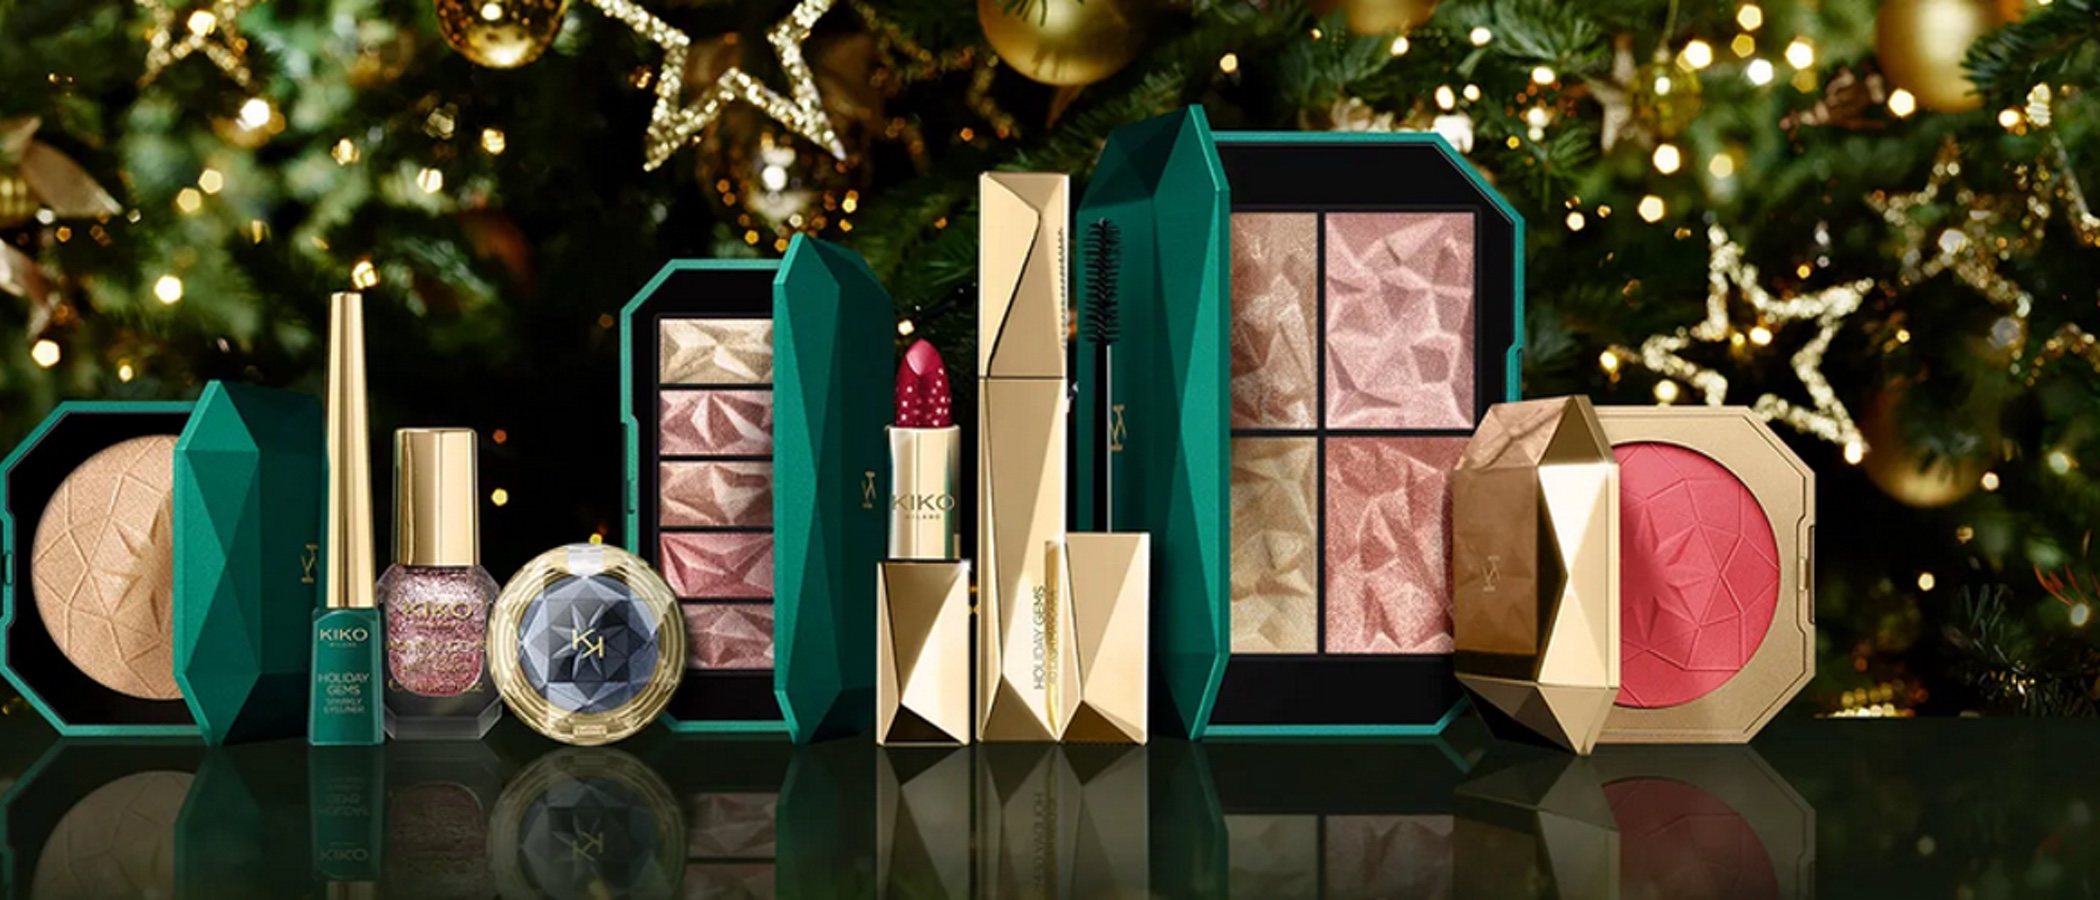 Kiko lanza su colección de Navidad 2020: así es 'Holiday Gems'